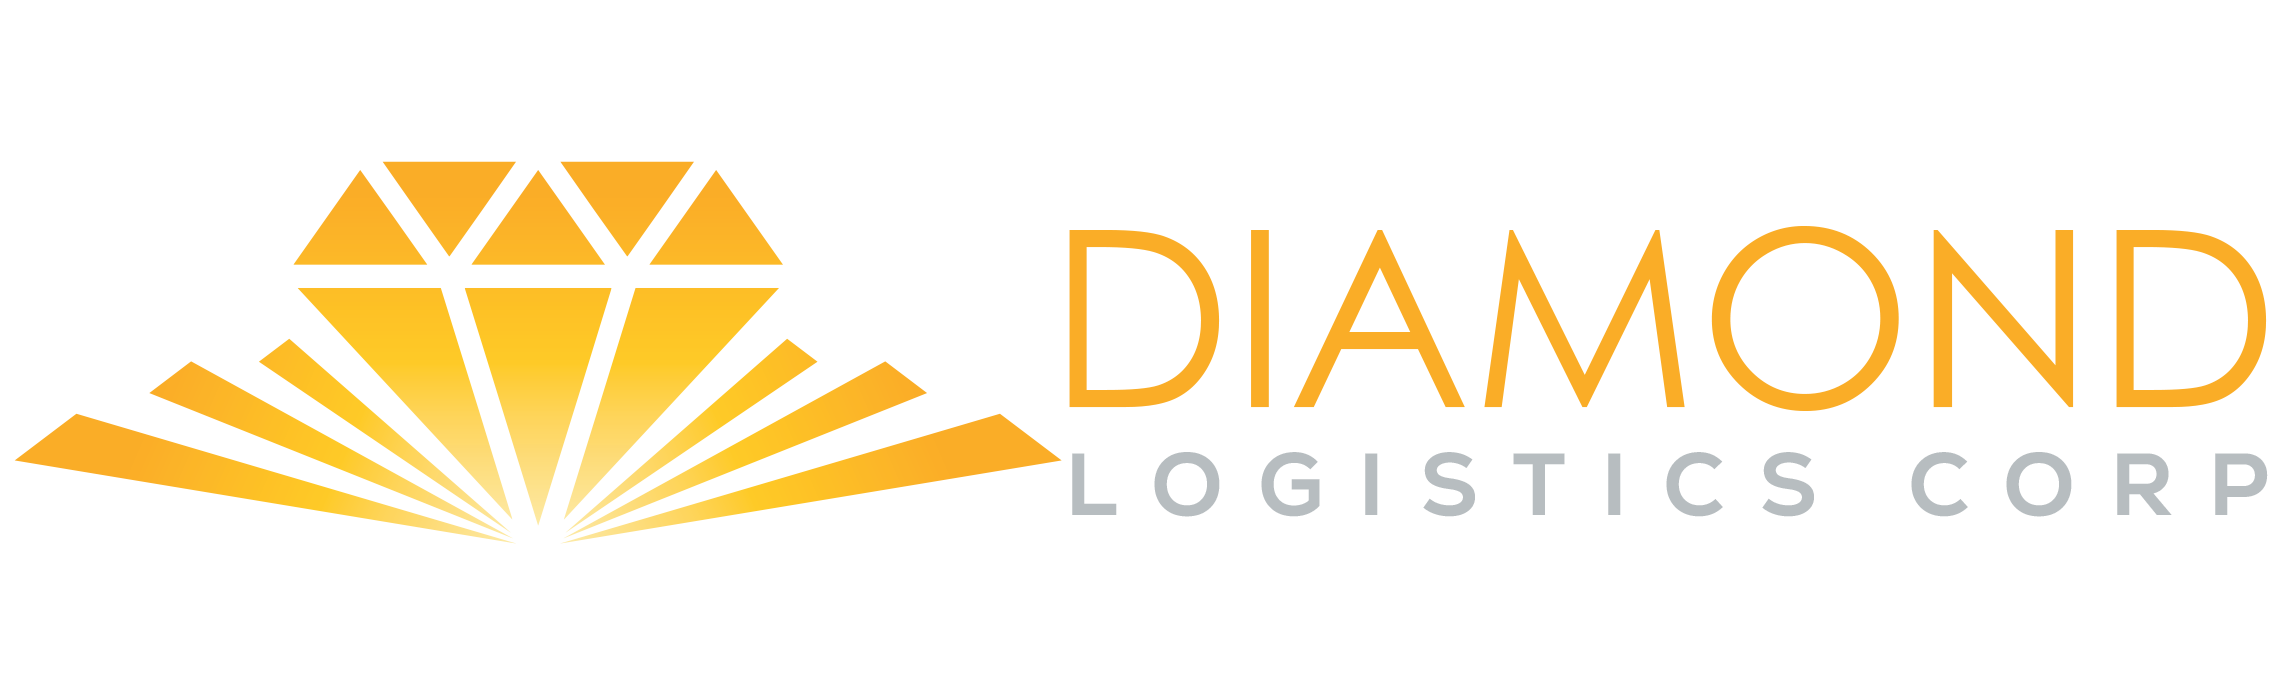 Diamond Logistics Corp